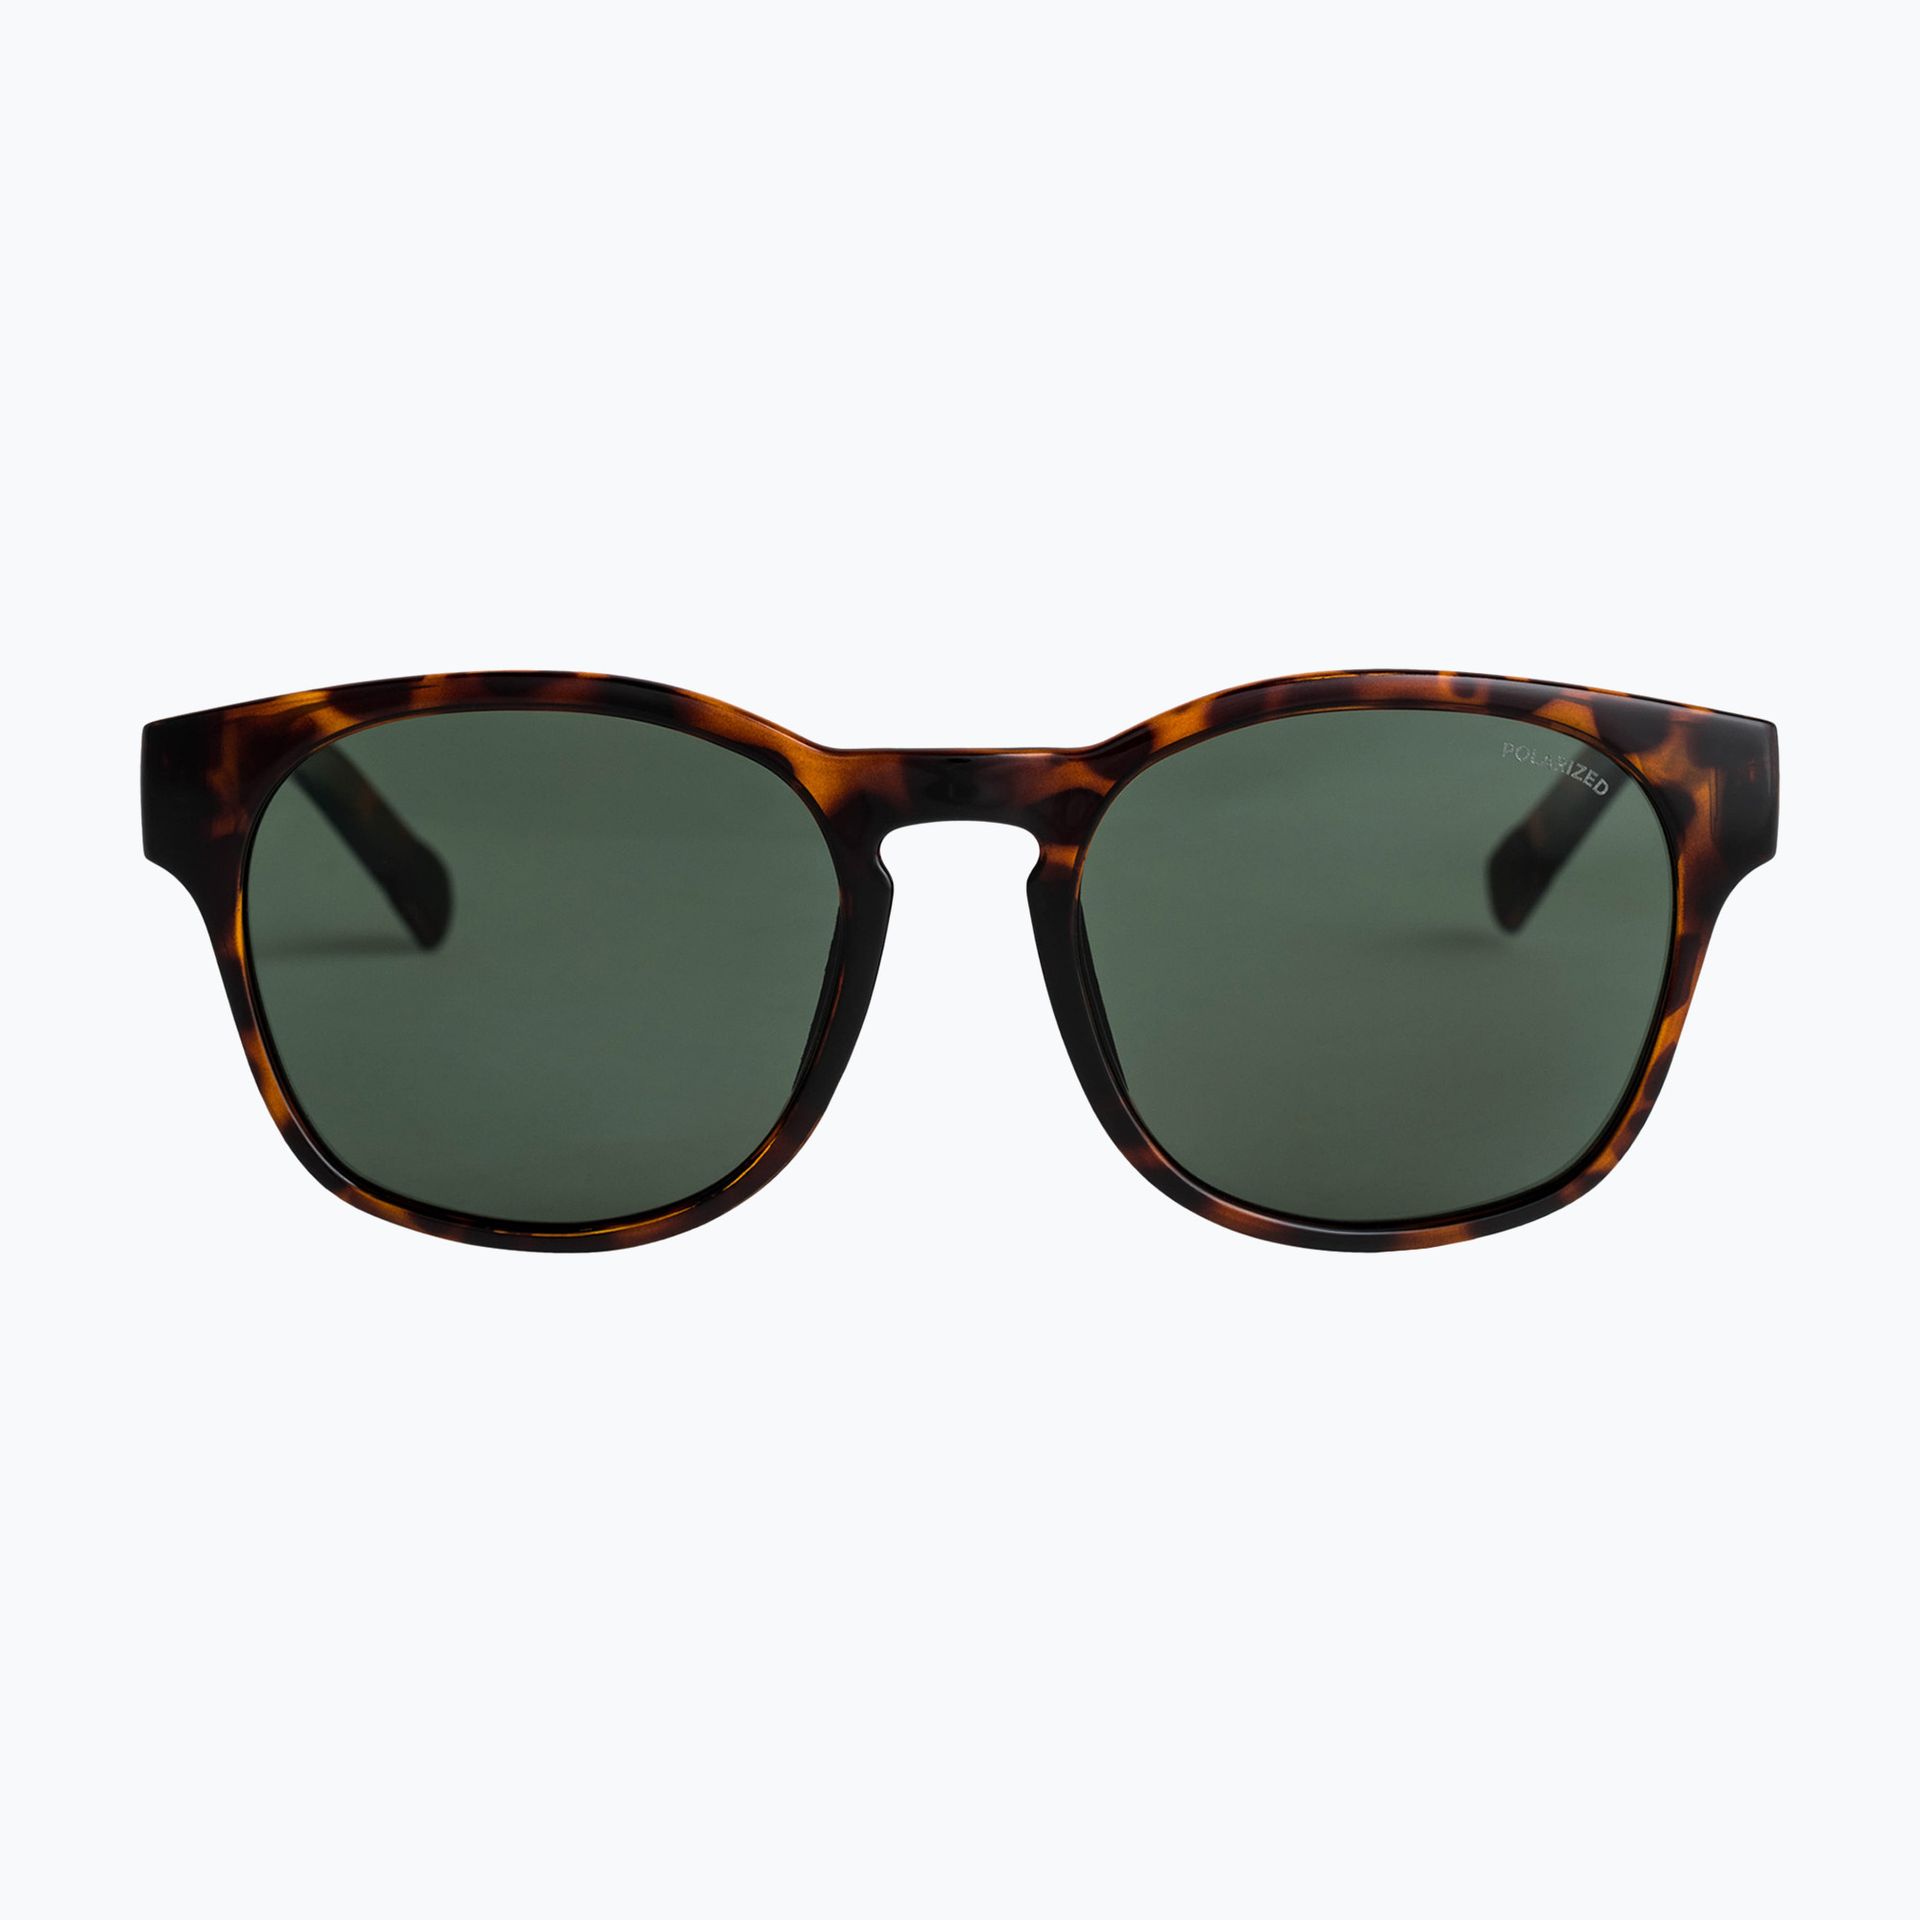 Okulary przeciwsłoneczne Quiksilver Patrol Polarized tortoise brown/green plz | WYSYŁKA W 24H | 30 DNI NA ZWROT